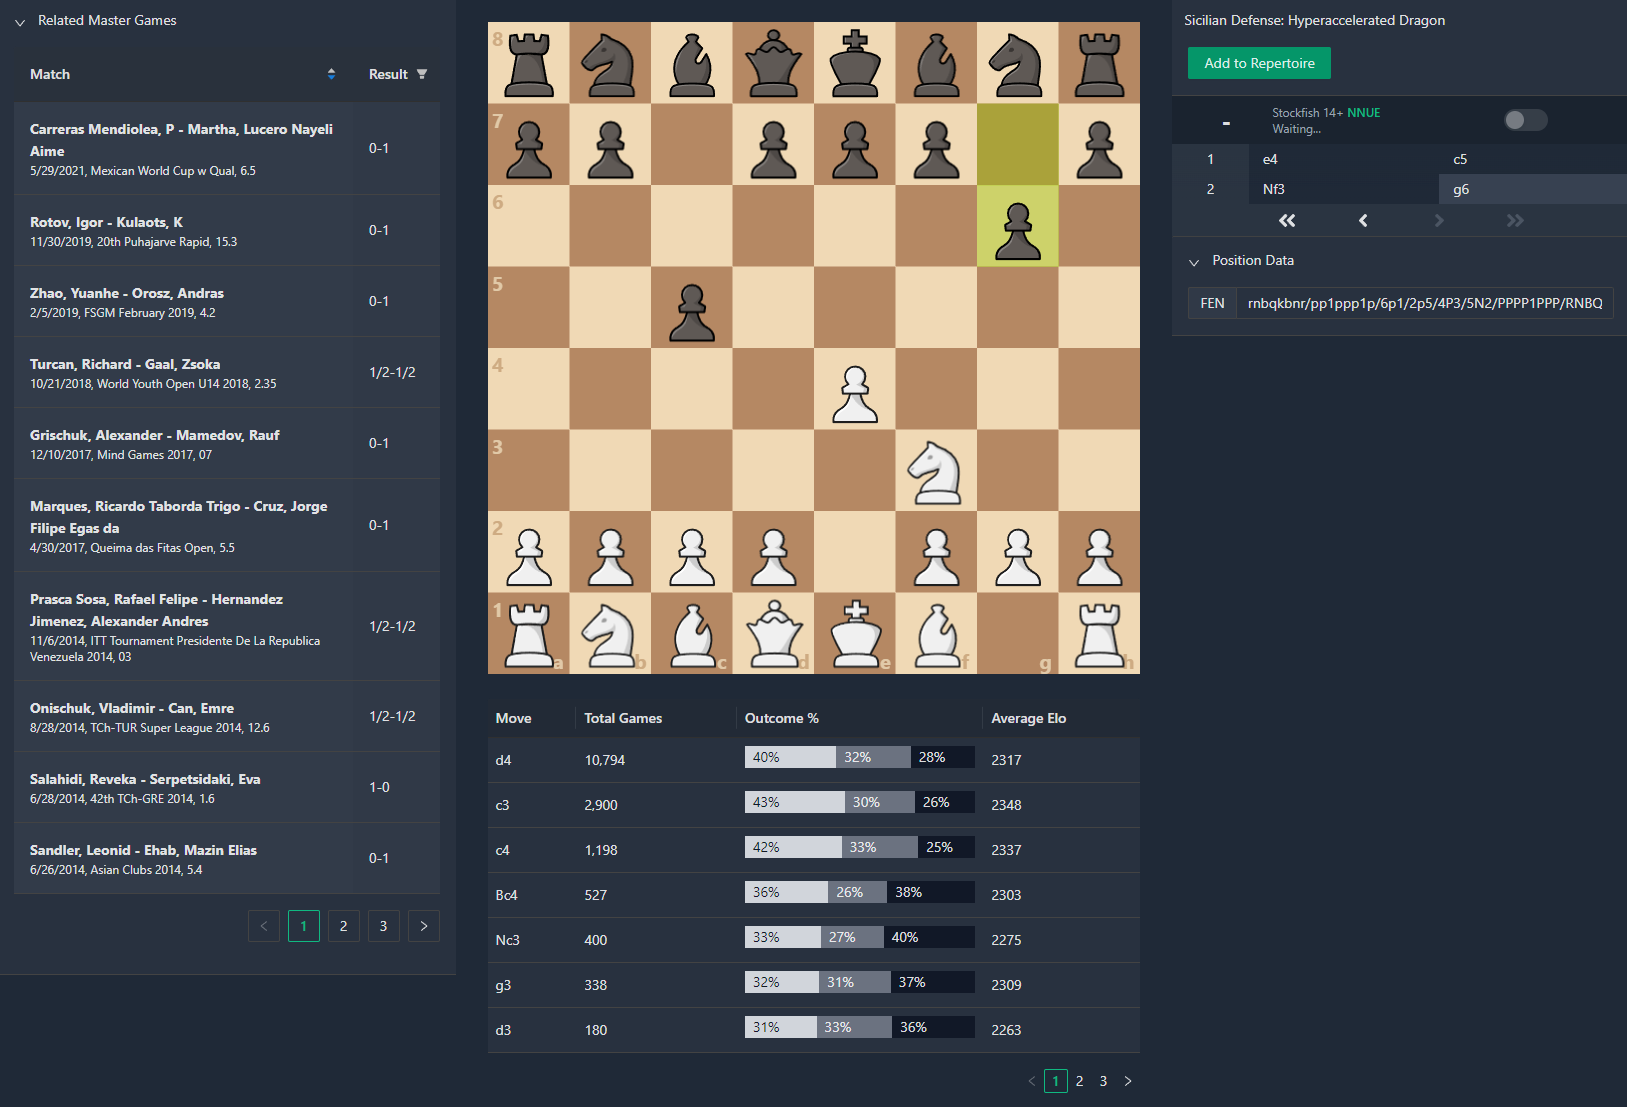 Chess Database - Opening Master